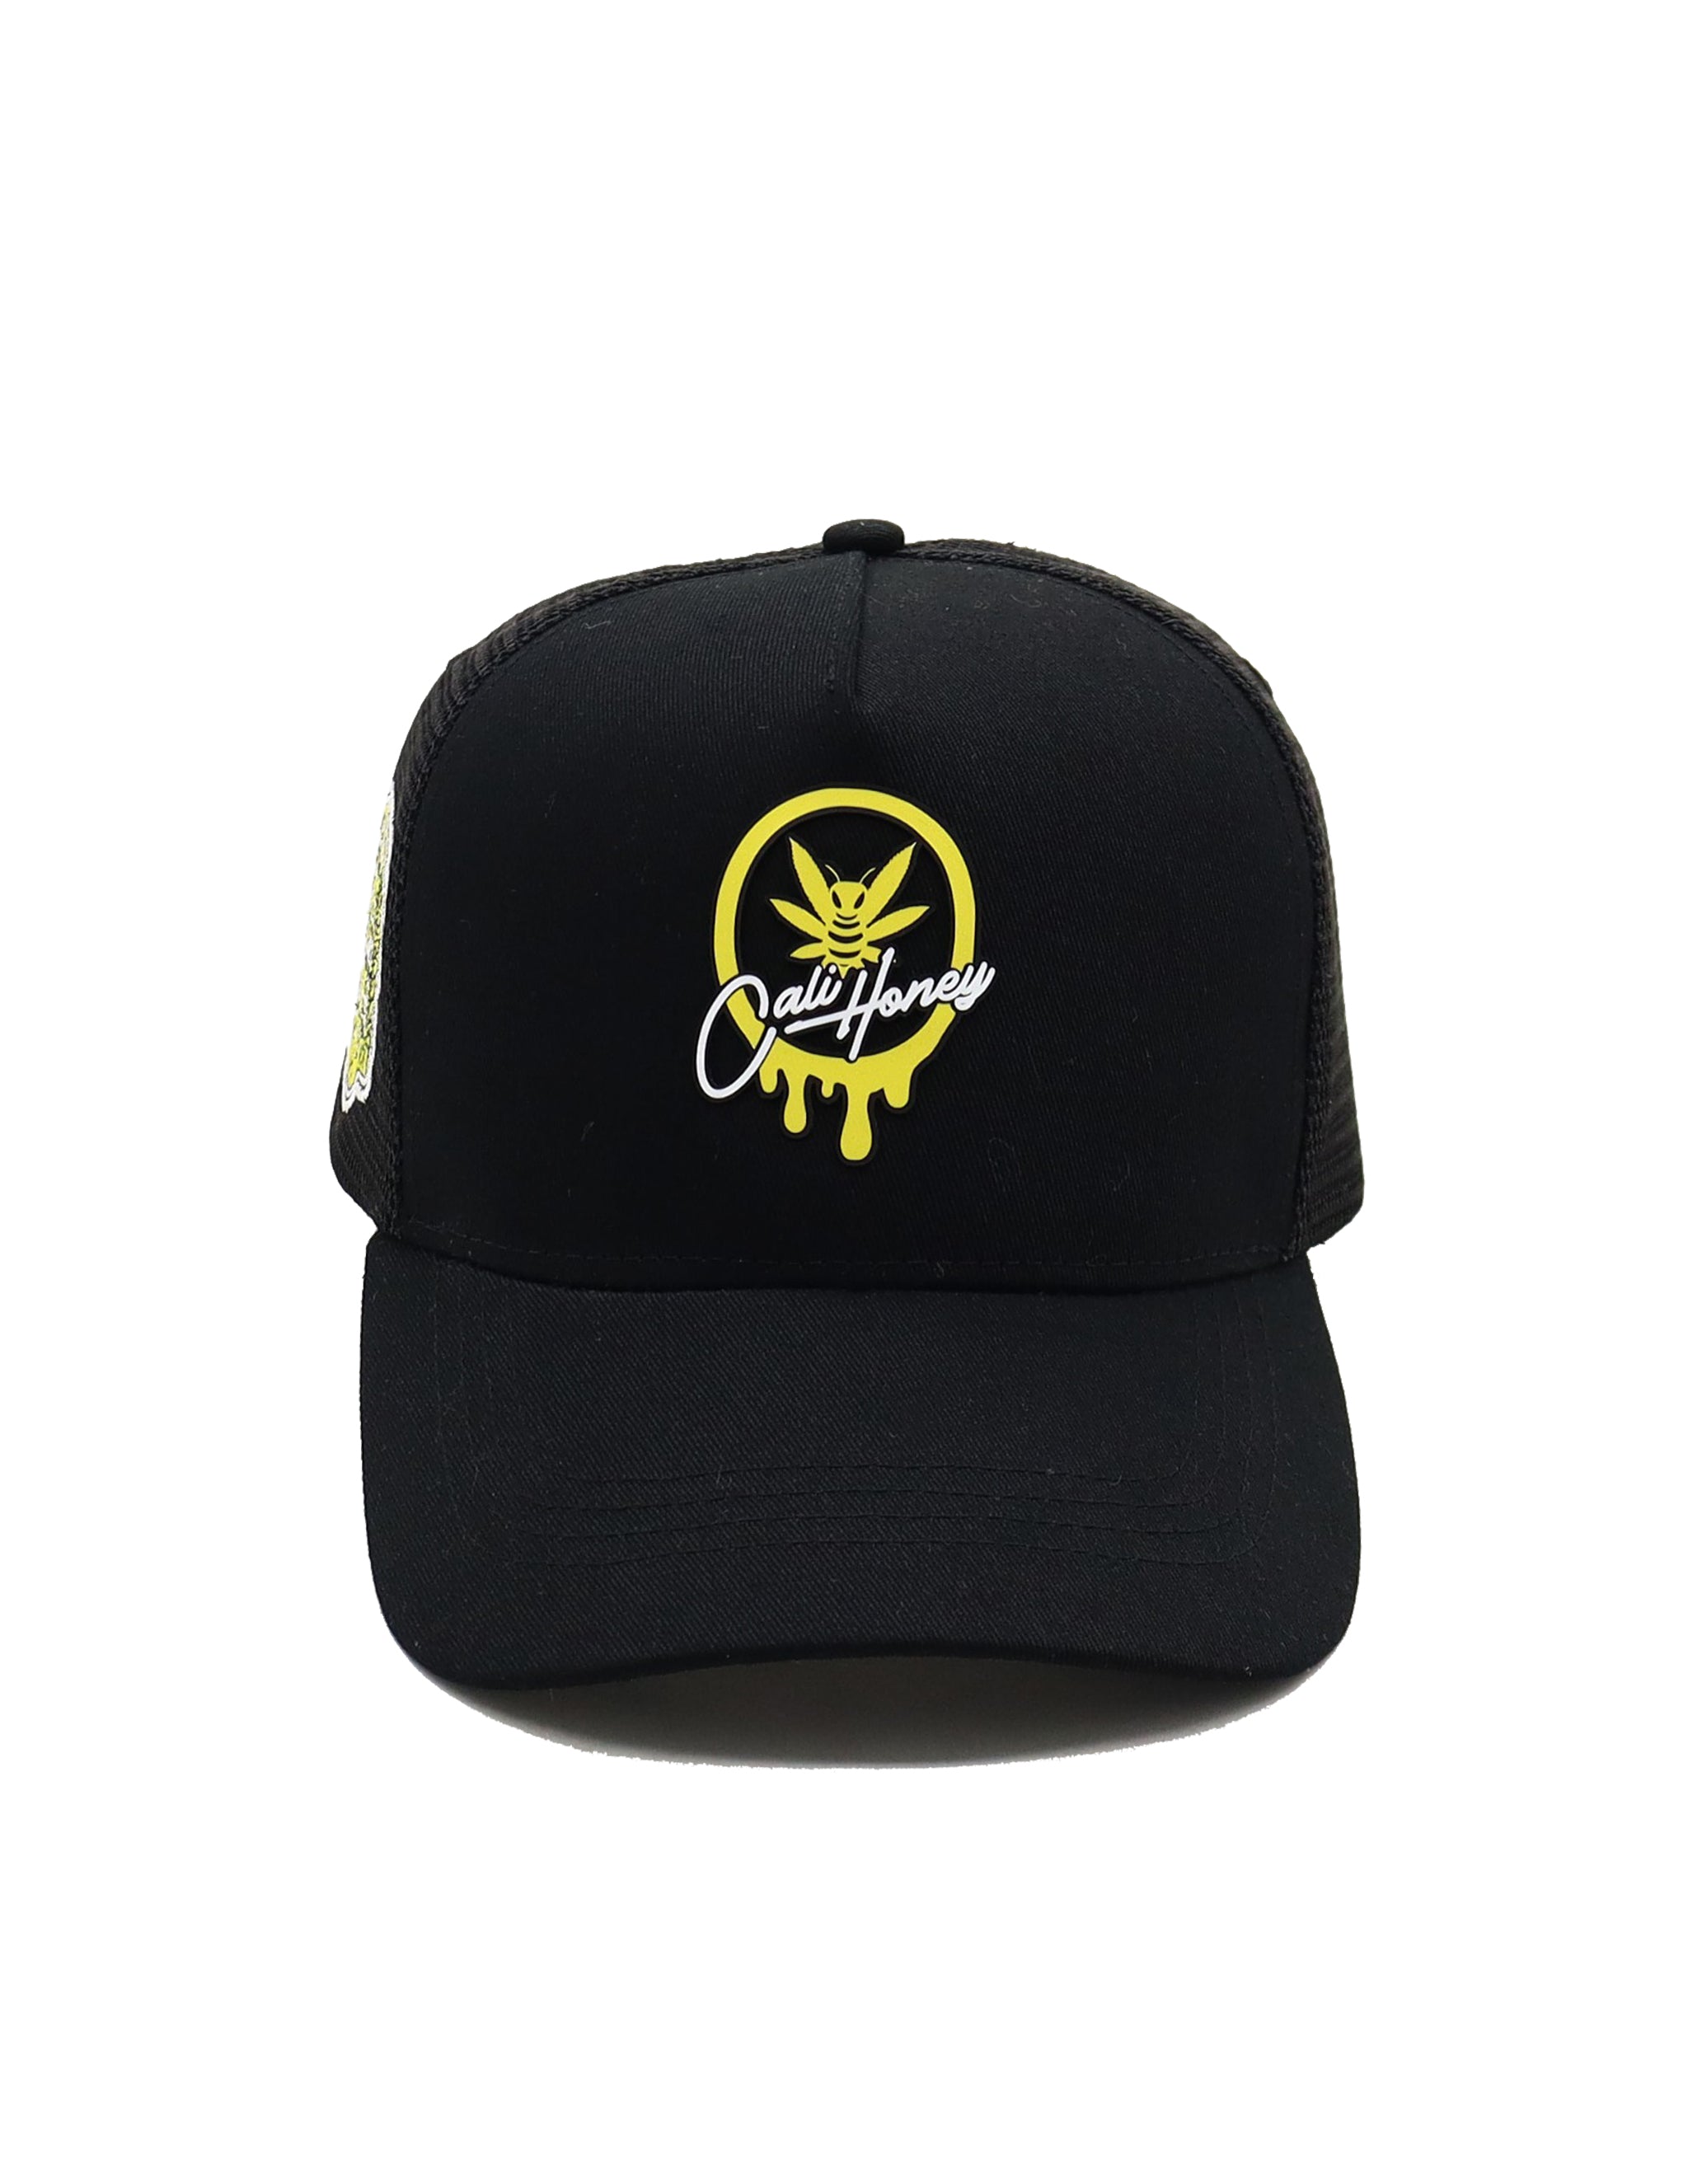 Cali Honey Trucker Hat